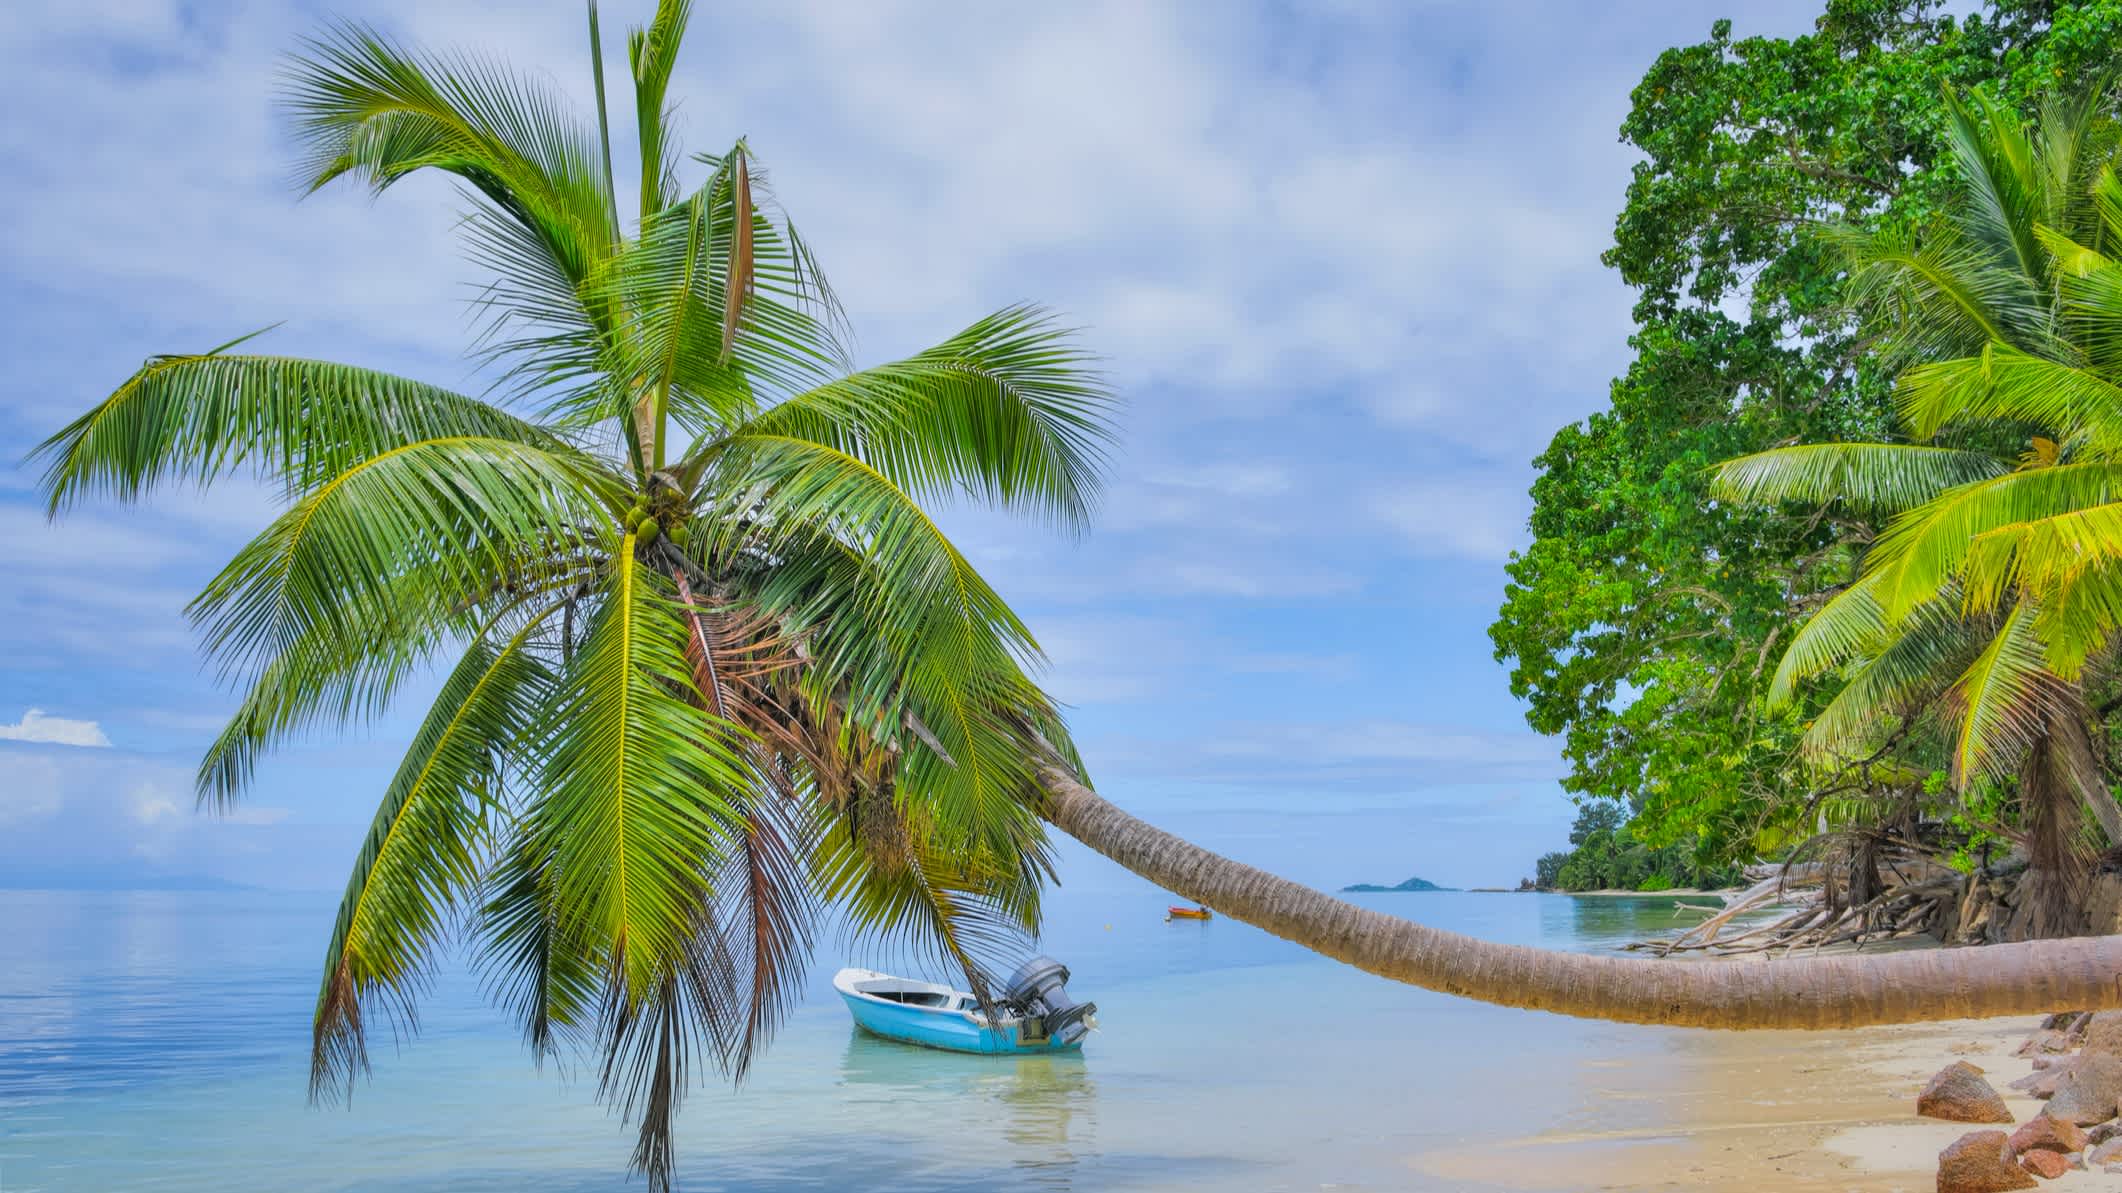 Der Strand von Anse St. Sauveur, Praslin Insel, Seychellen mit einer krummen ins Wasser ragenden Palme im Vordergrund und einem lokalen Fischerboot im Wasser.